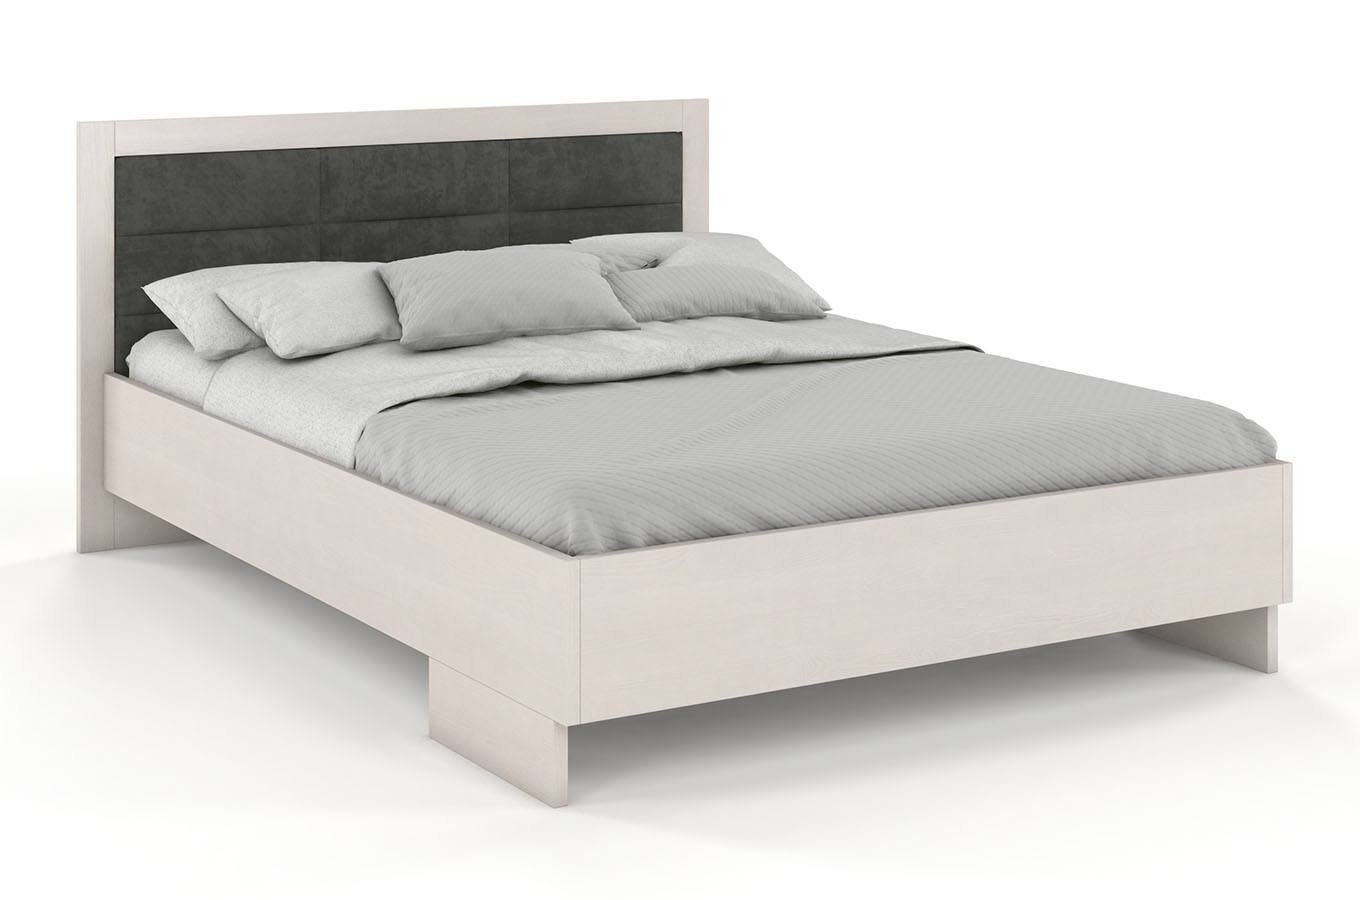 Dřevěná postel s čalouněným čelem Kalmar High borovice - bílá 140 x 200 cm, Casablanca 2301